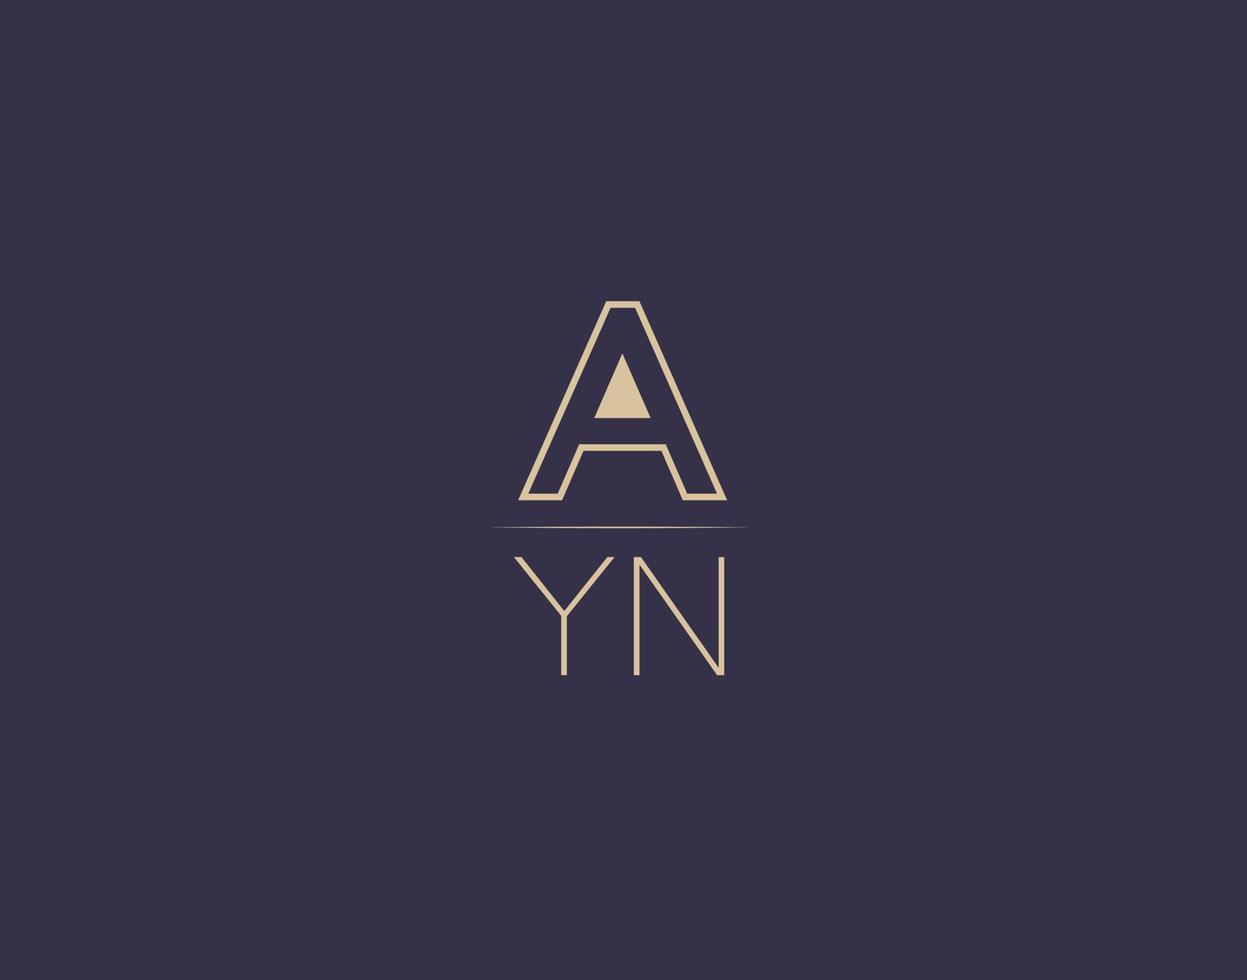 ayn brief logo ontwerp modern minimalistische vector afbeeldingen